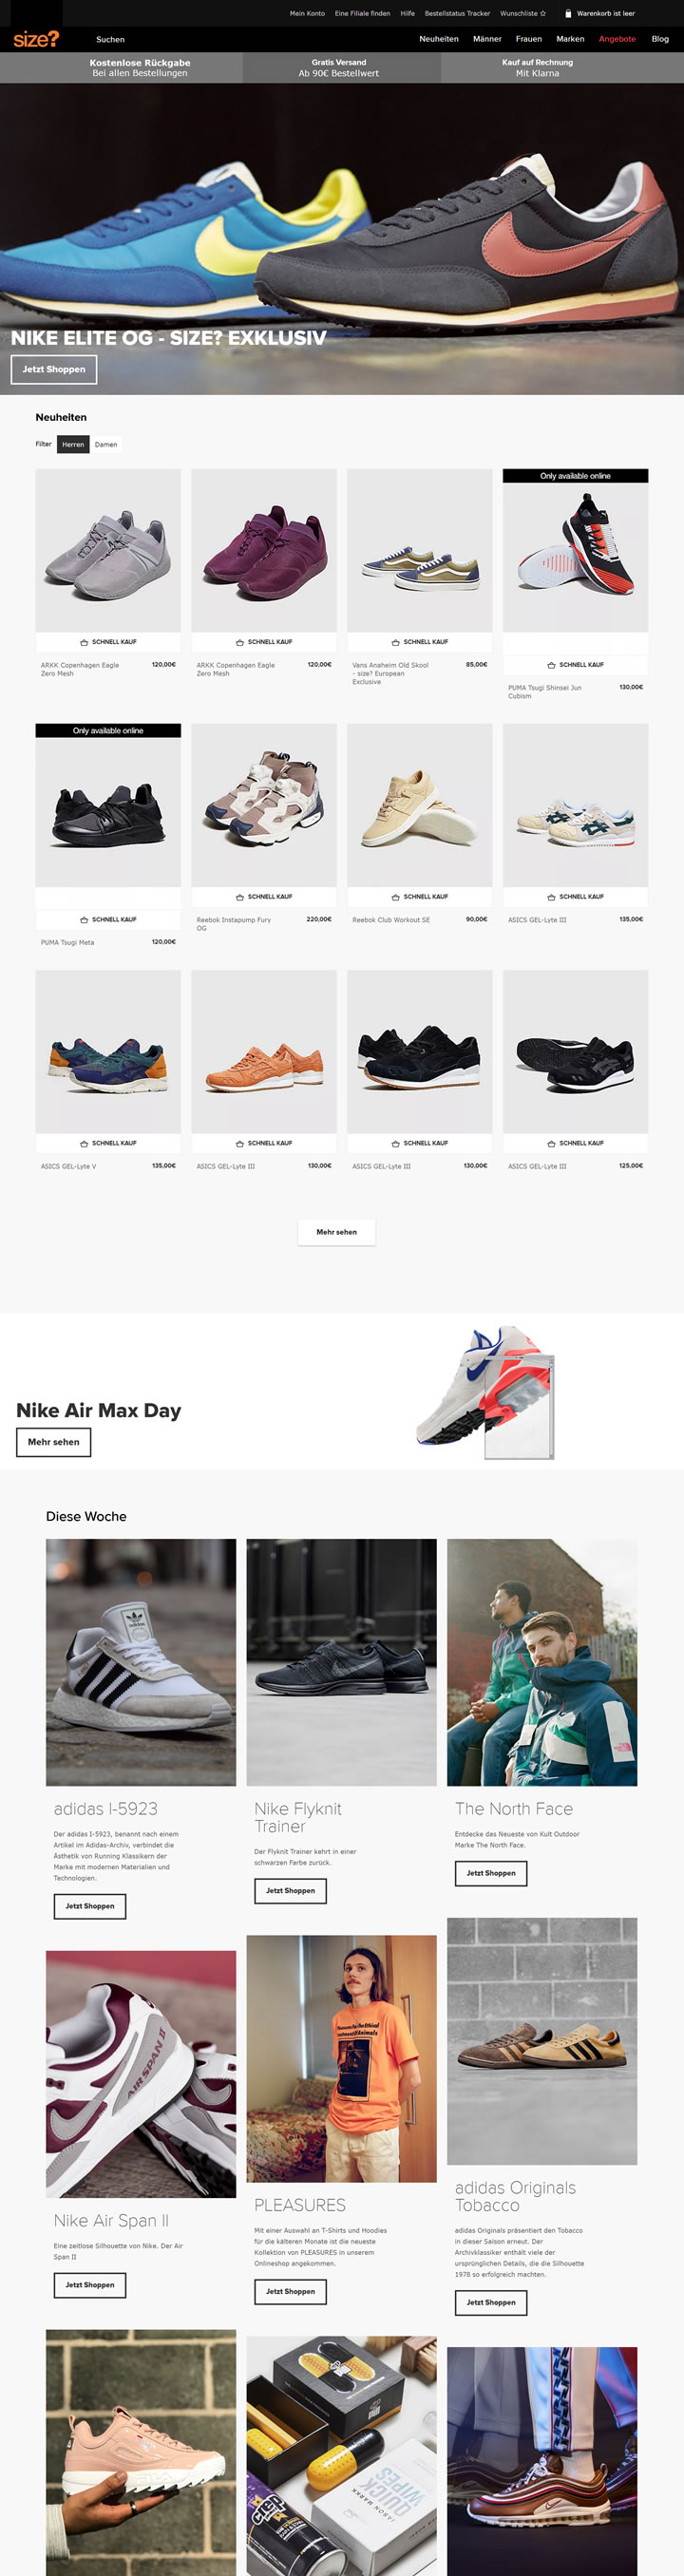 size?德国官方网站：英国伦敦的球鞋精品店